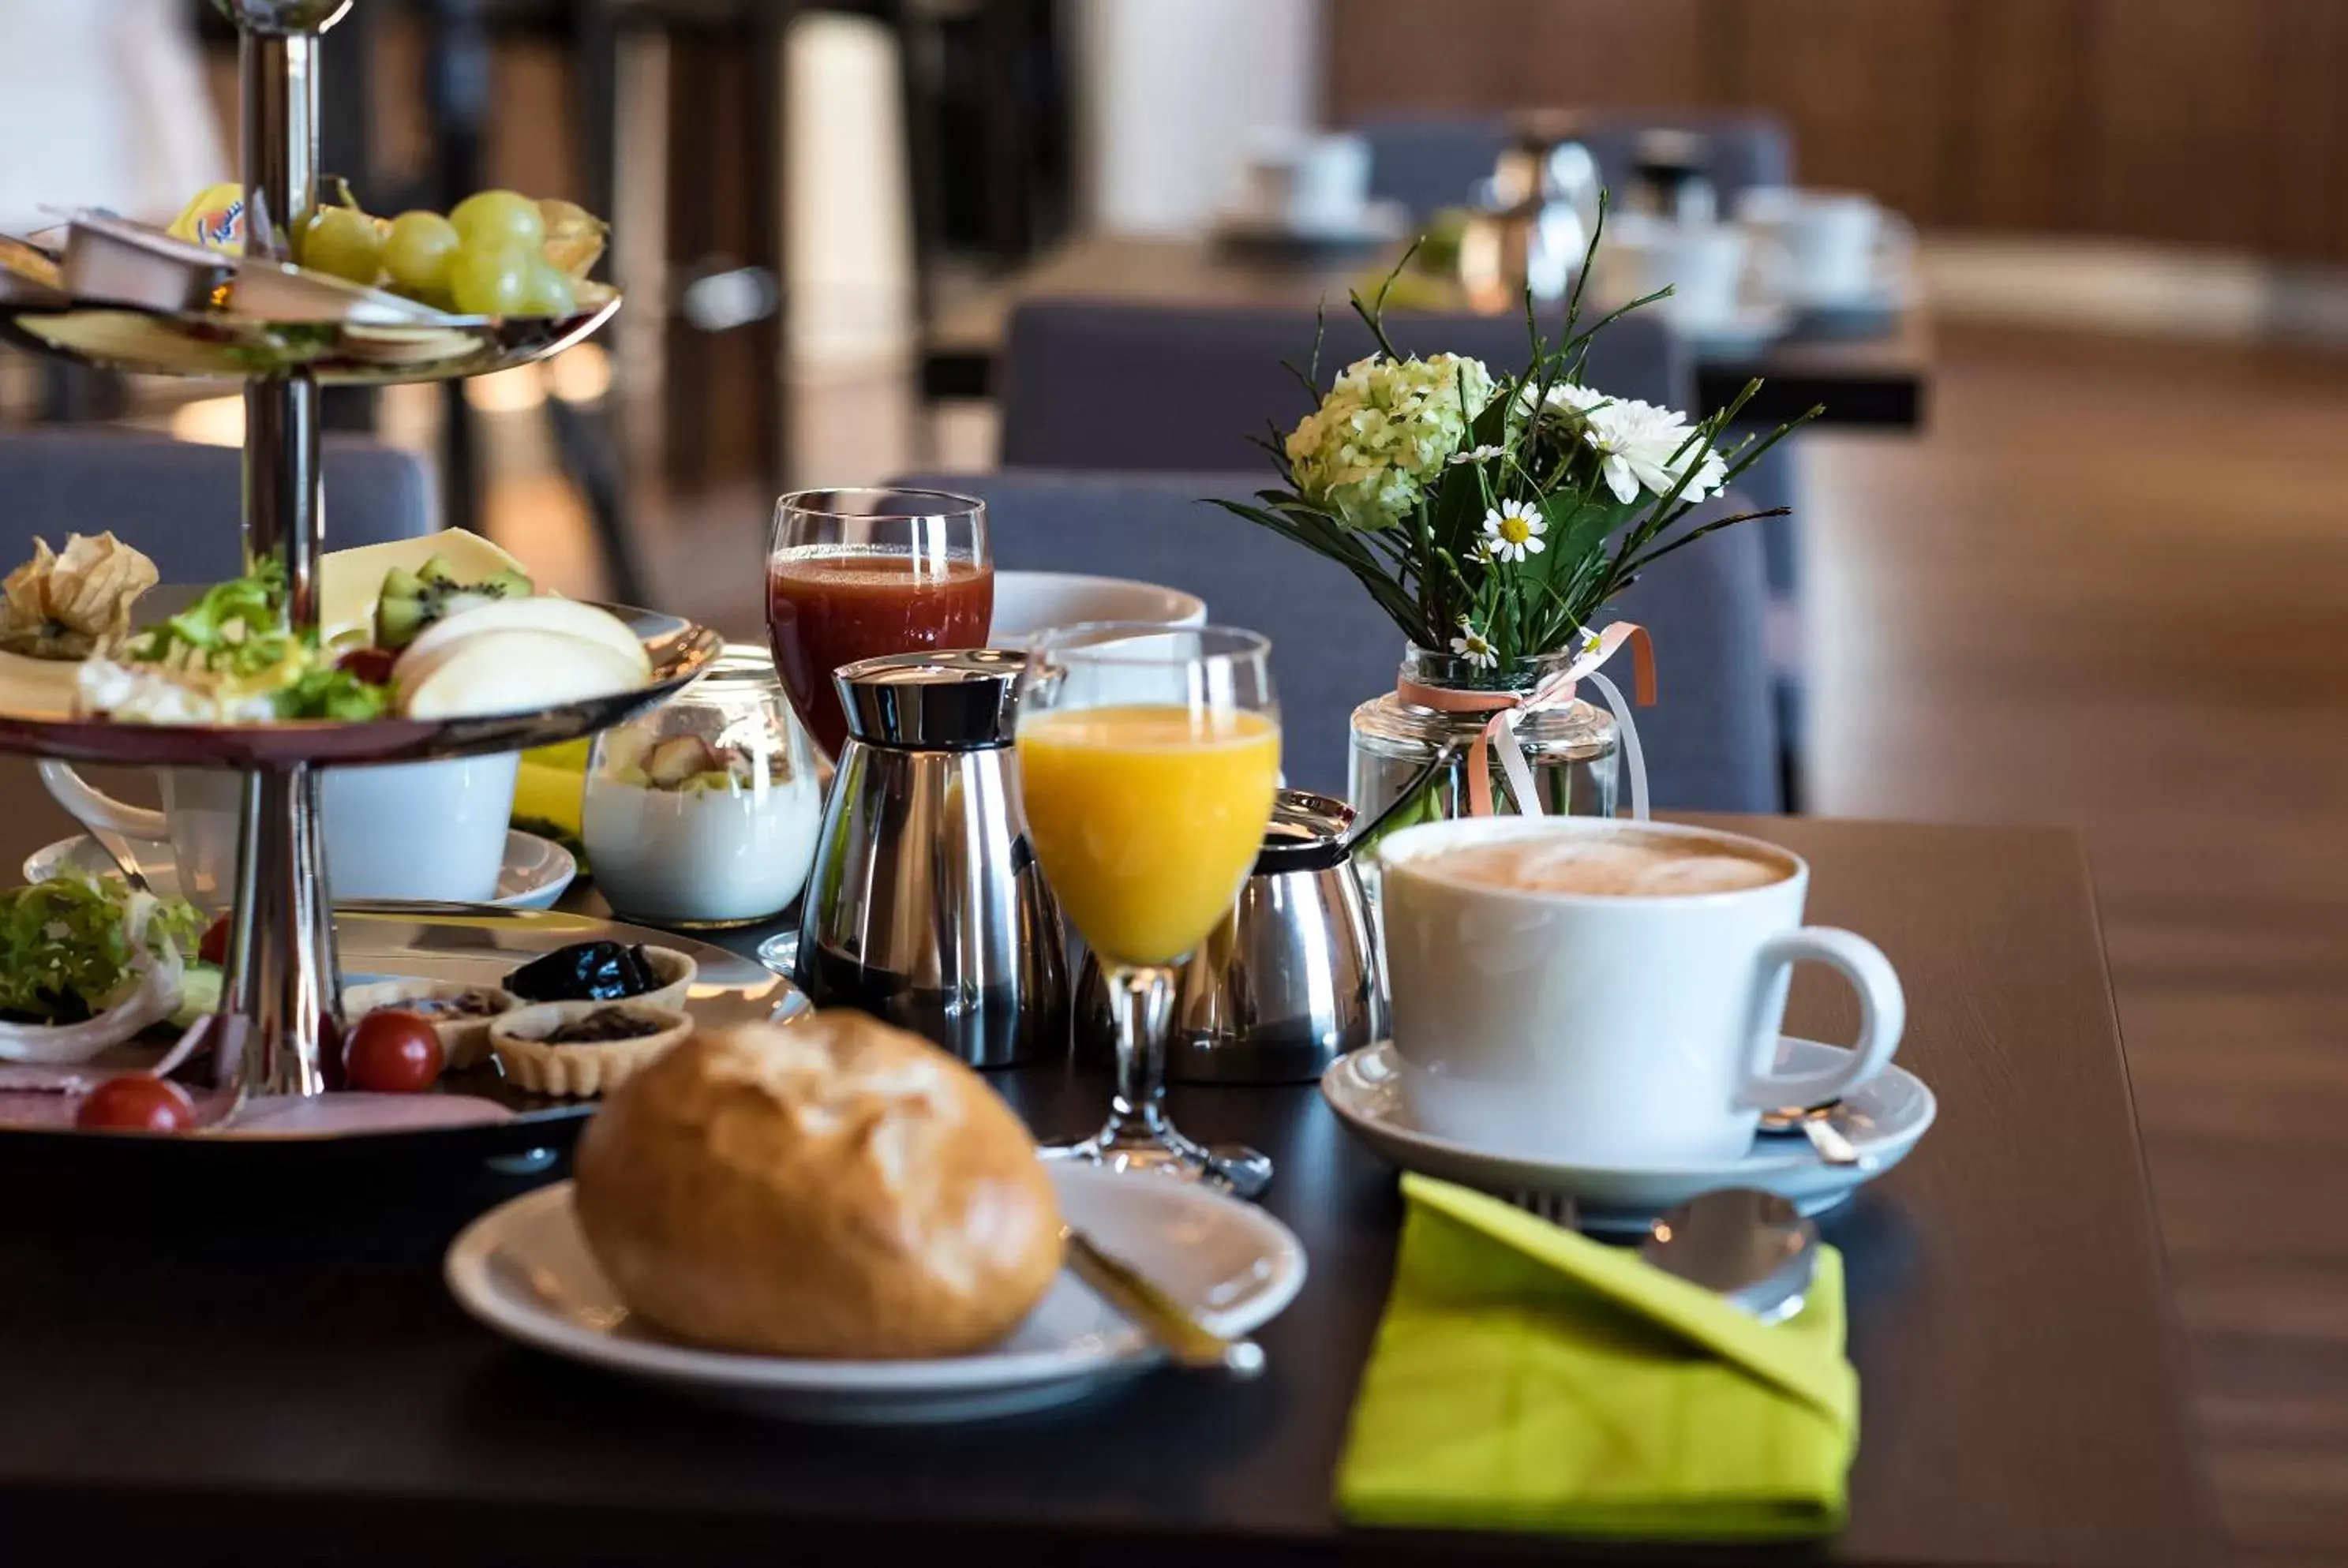 Buffet breakfast in Alexianer Hotel am Wasserturm